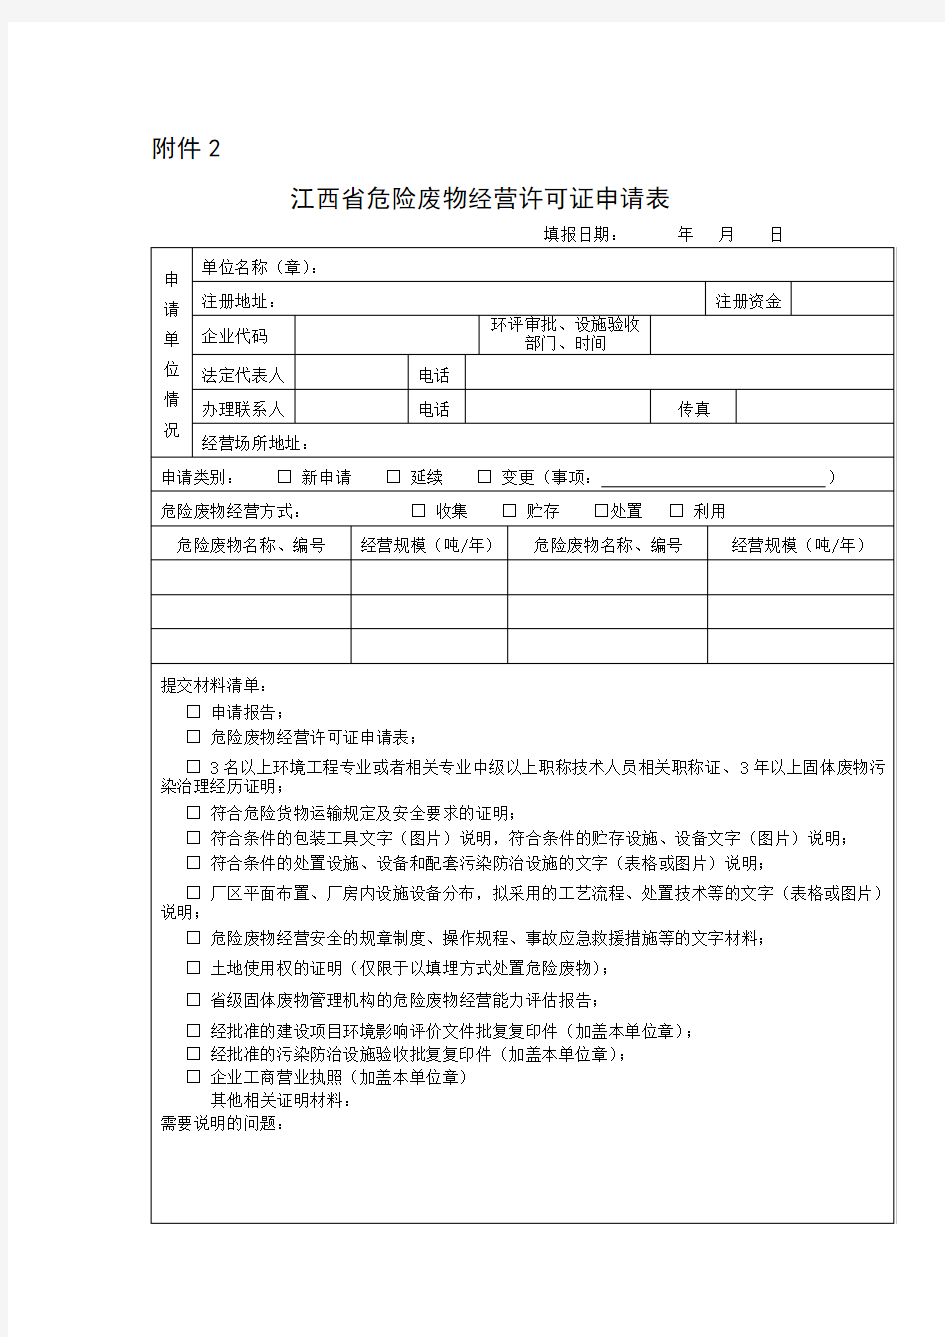 江西省危险废物经营许可证申请表